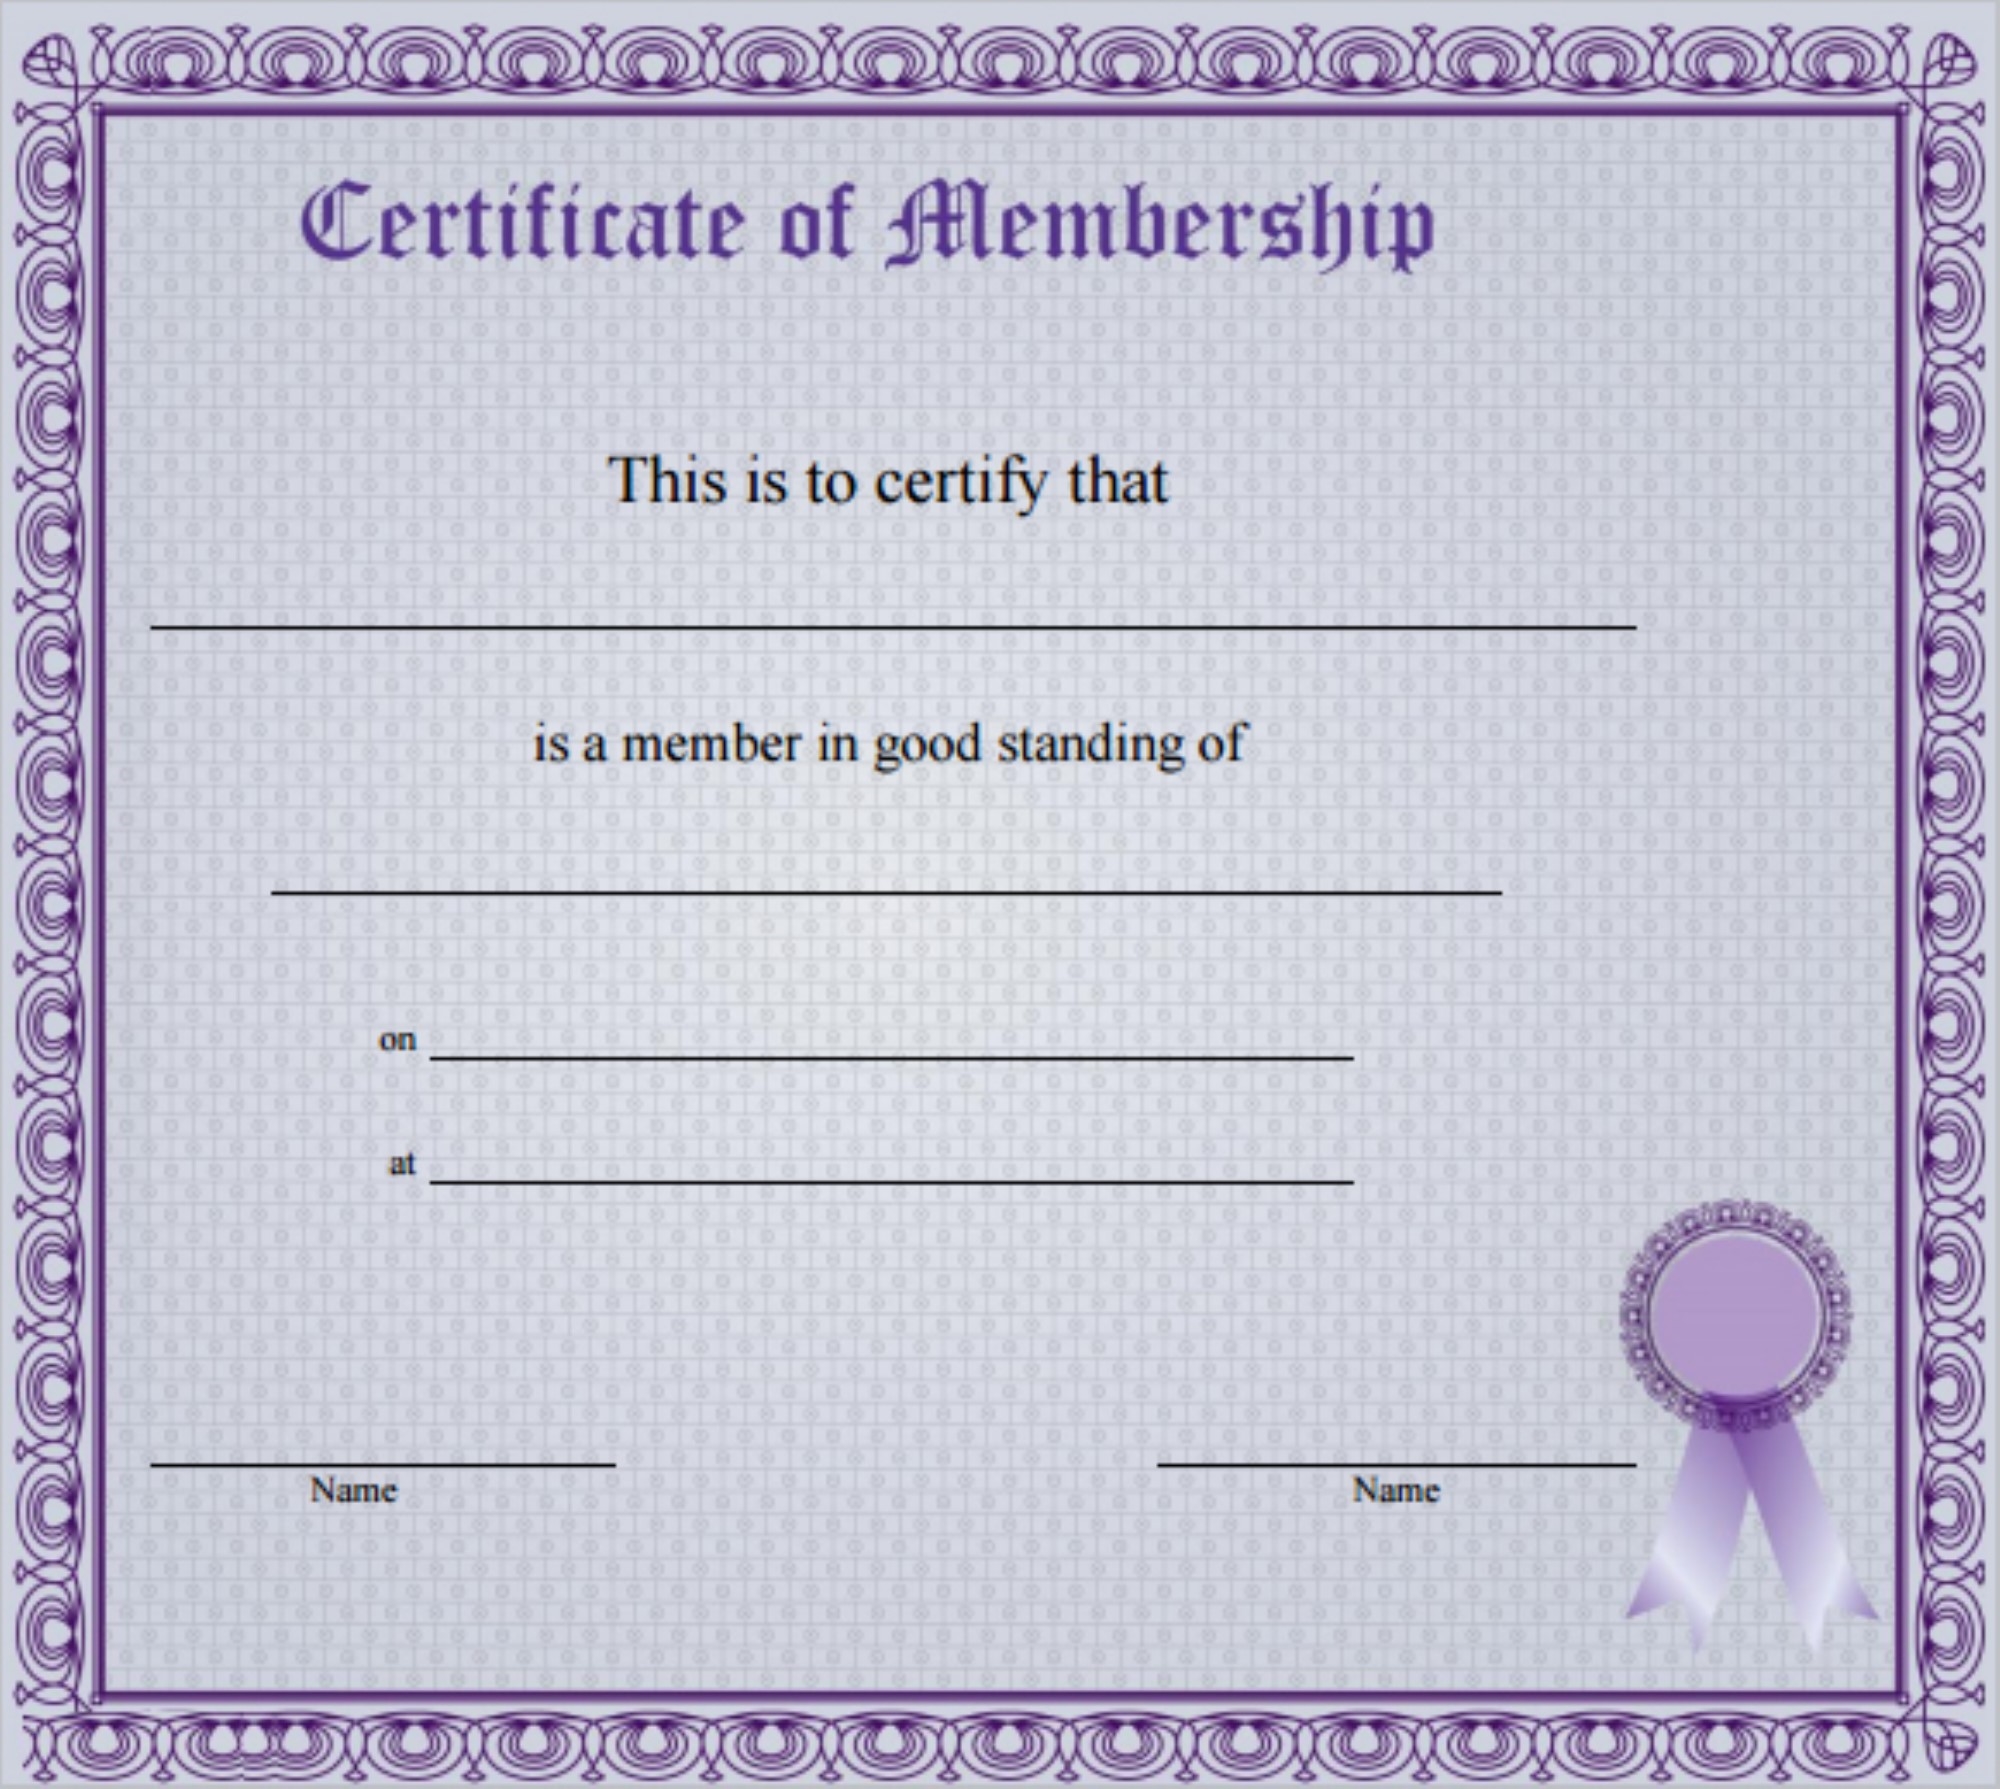 Certificate of Membership (2)